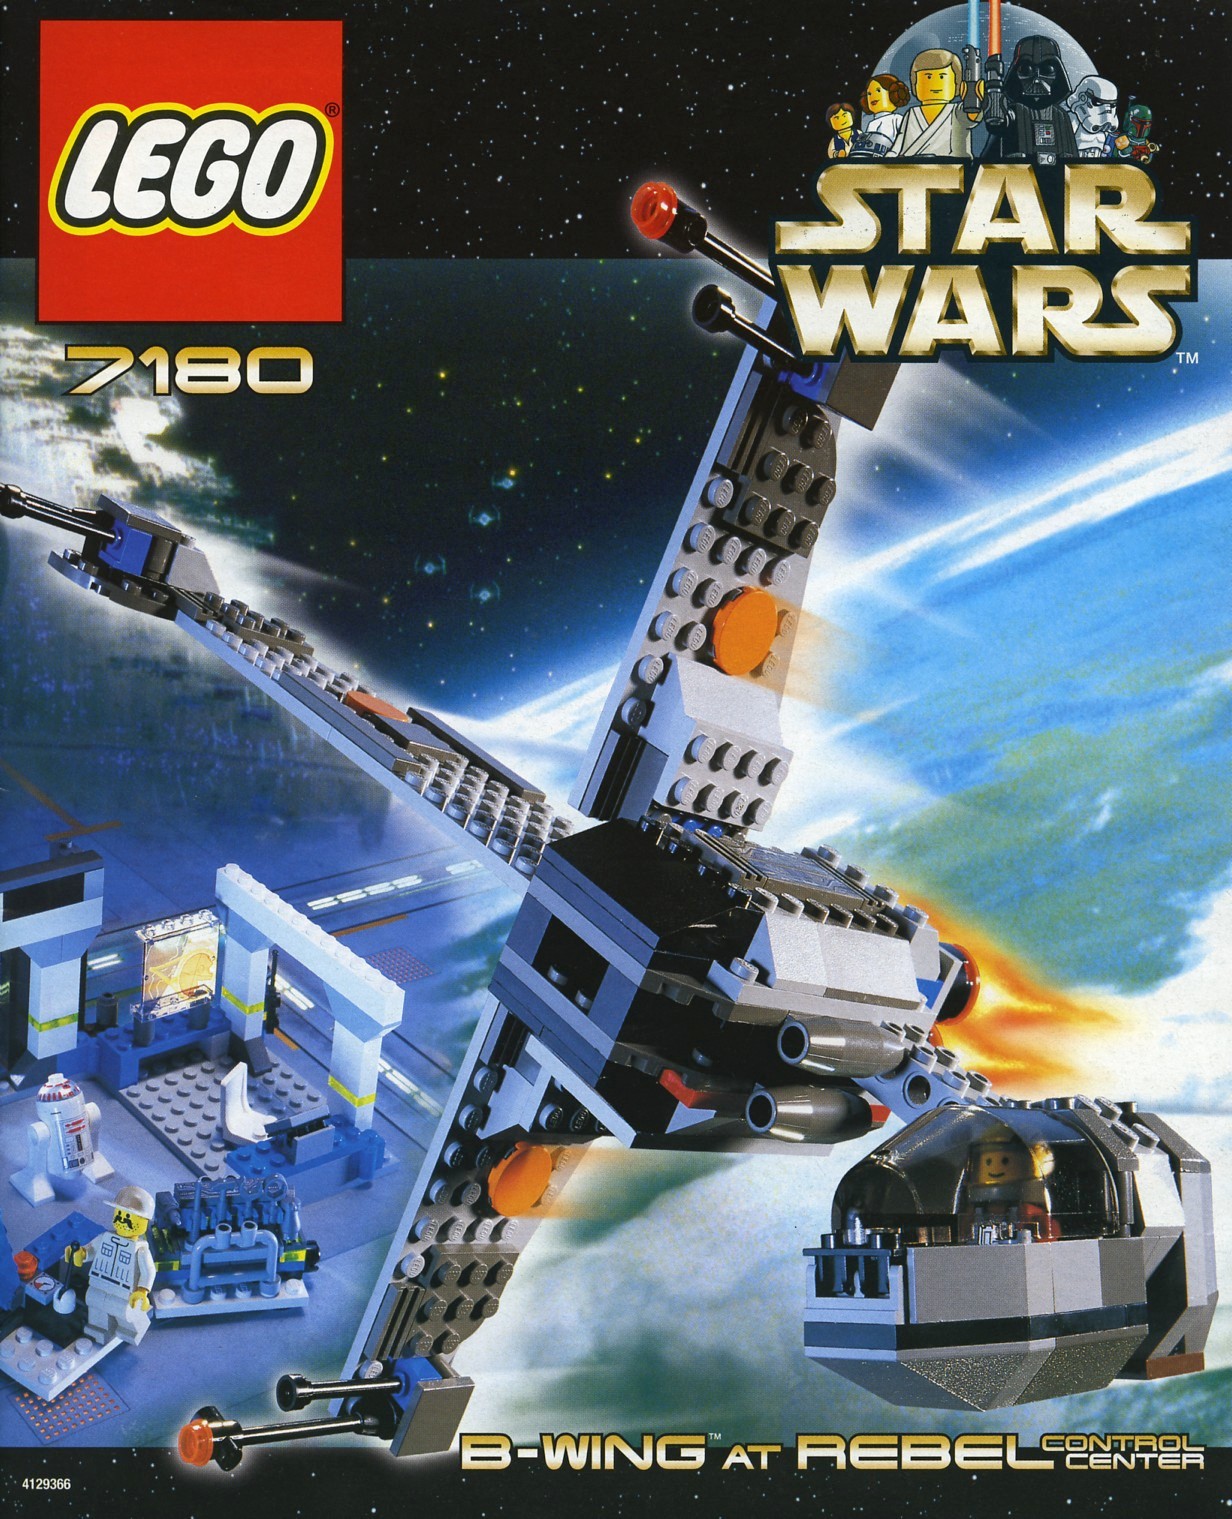 old lego sets 2000s